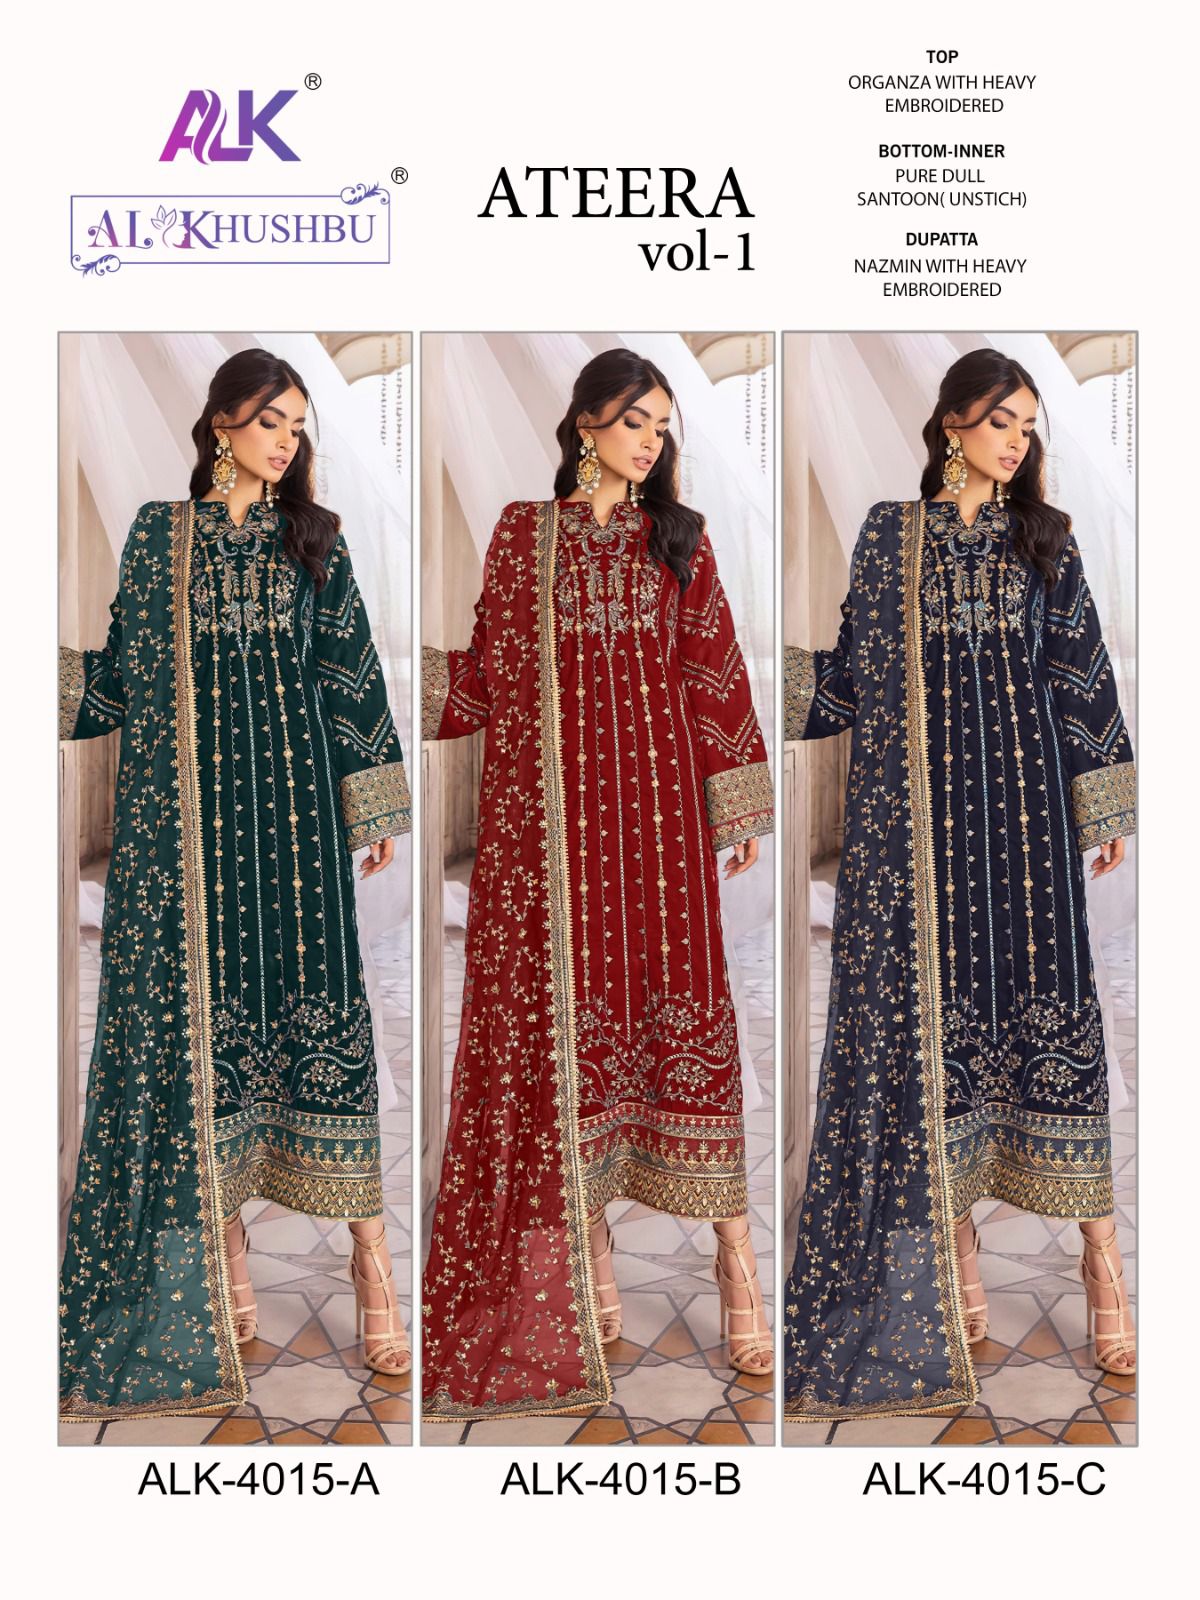 al khushbu ateera vol 1 alk d no A B C hits colours georgette grace ful look salwar suit catalog